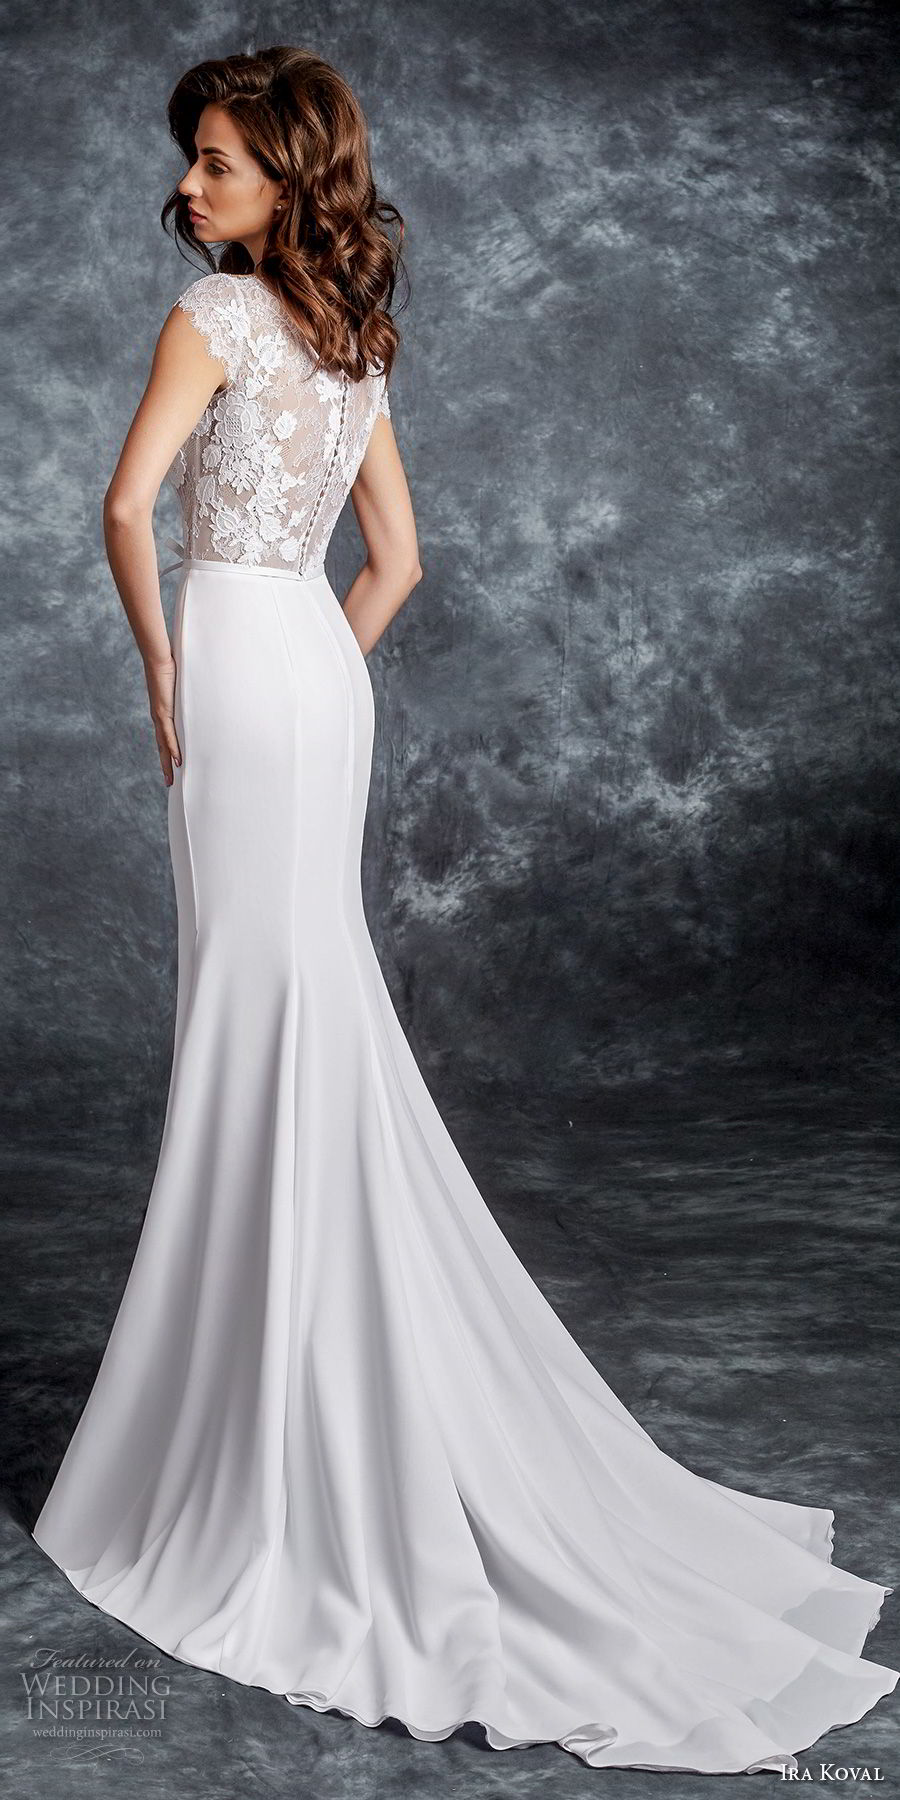 ira koval 2017 bridal cap sleeves bateau neck heavily embellished bodice elegant sheath wedding dress covered lace back sweep train (626) bv